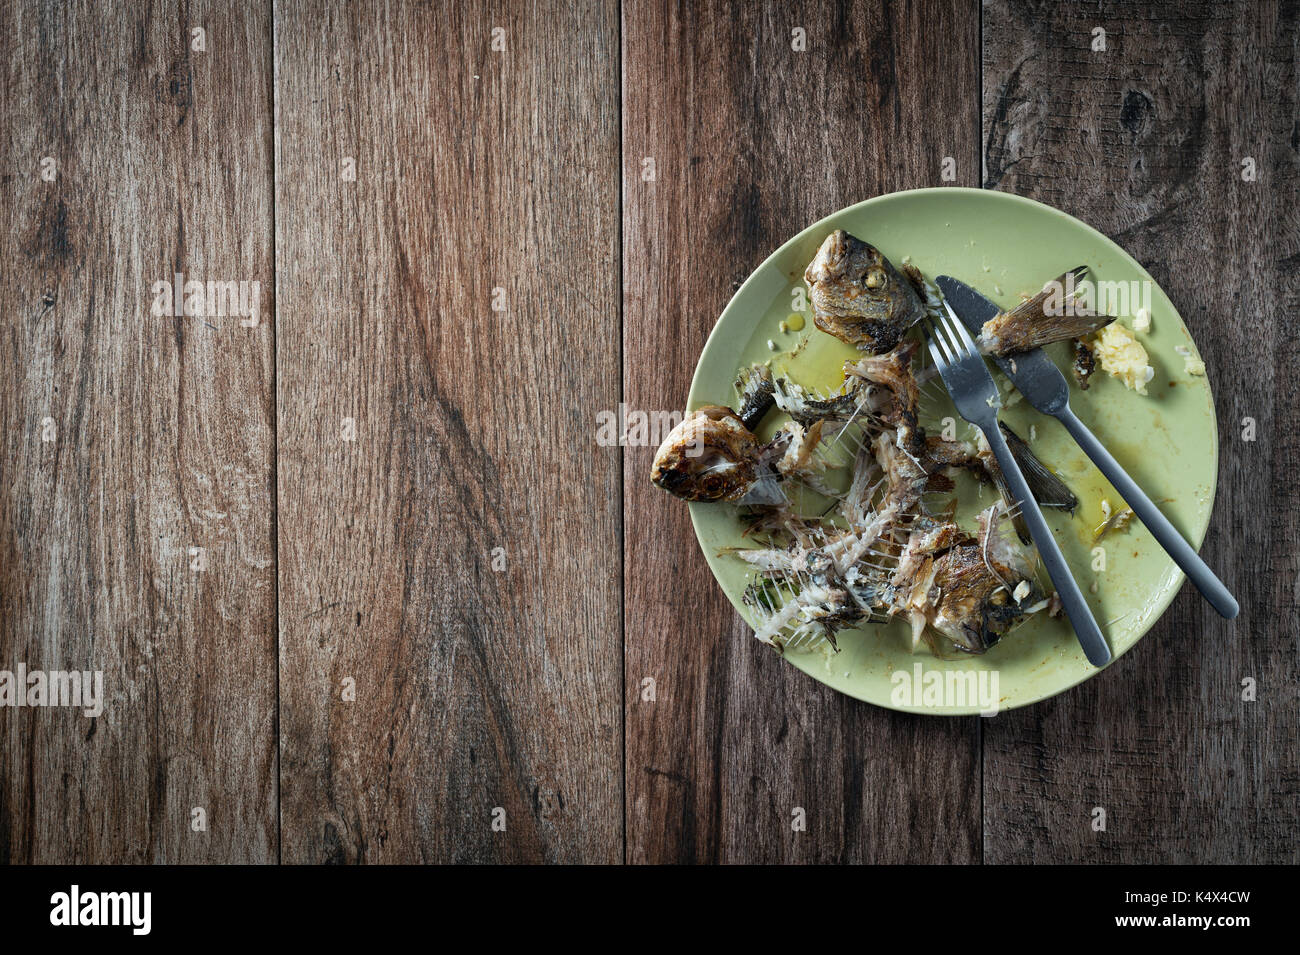 Fisch auf dem Teller mit Messer und Gabel beiseite stellen. Essensreste, Hausmüll entsorgt. Einige negativen Raum. Stockfoto